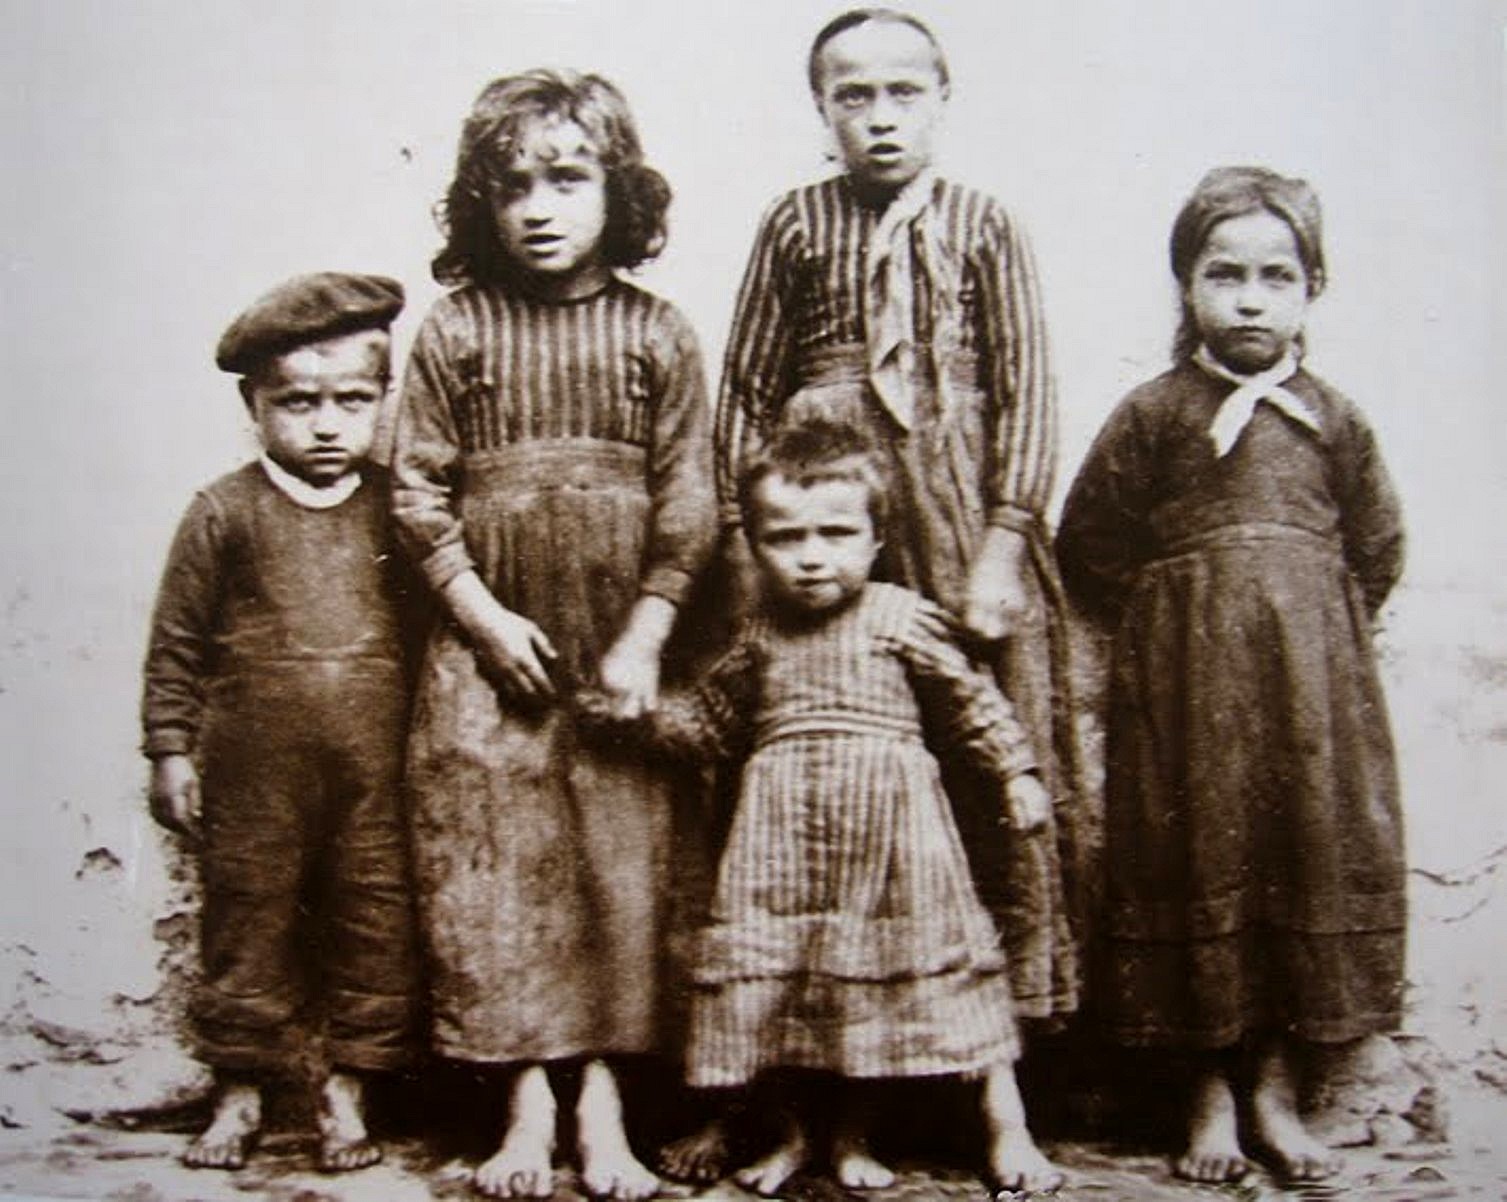 Enfants du peuple sous le Second Empire - Collection Georges Sirot  (source : Gallica-BNF)